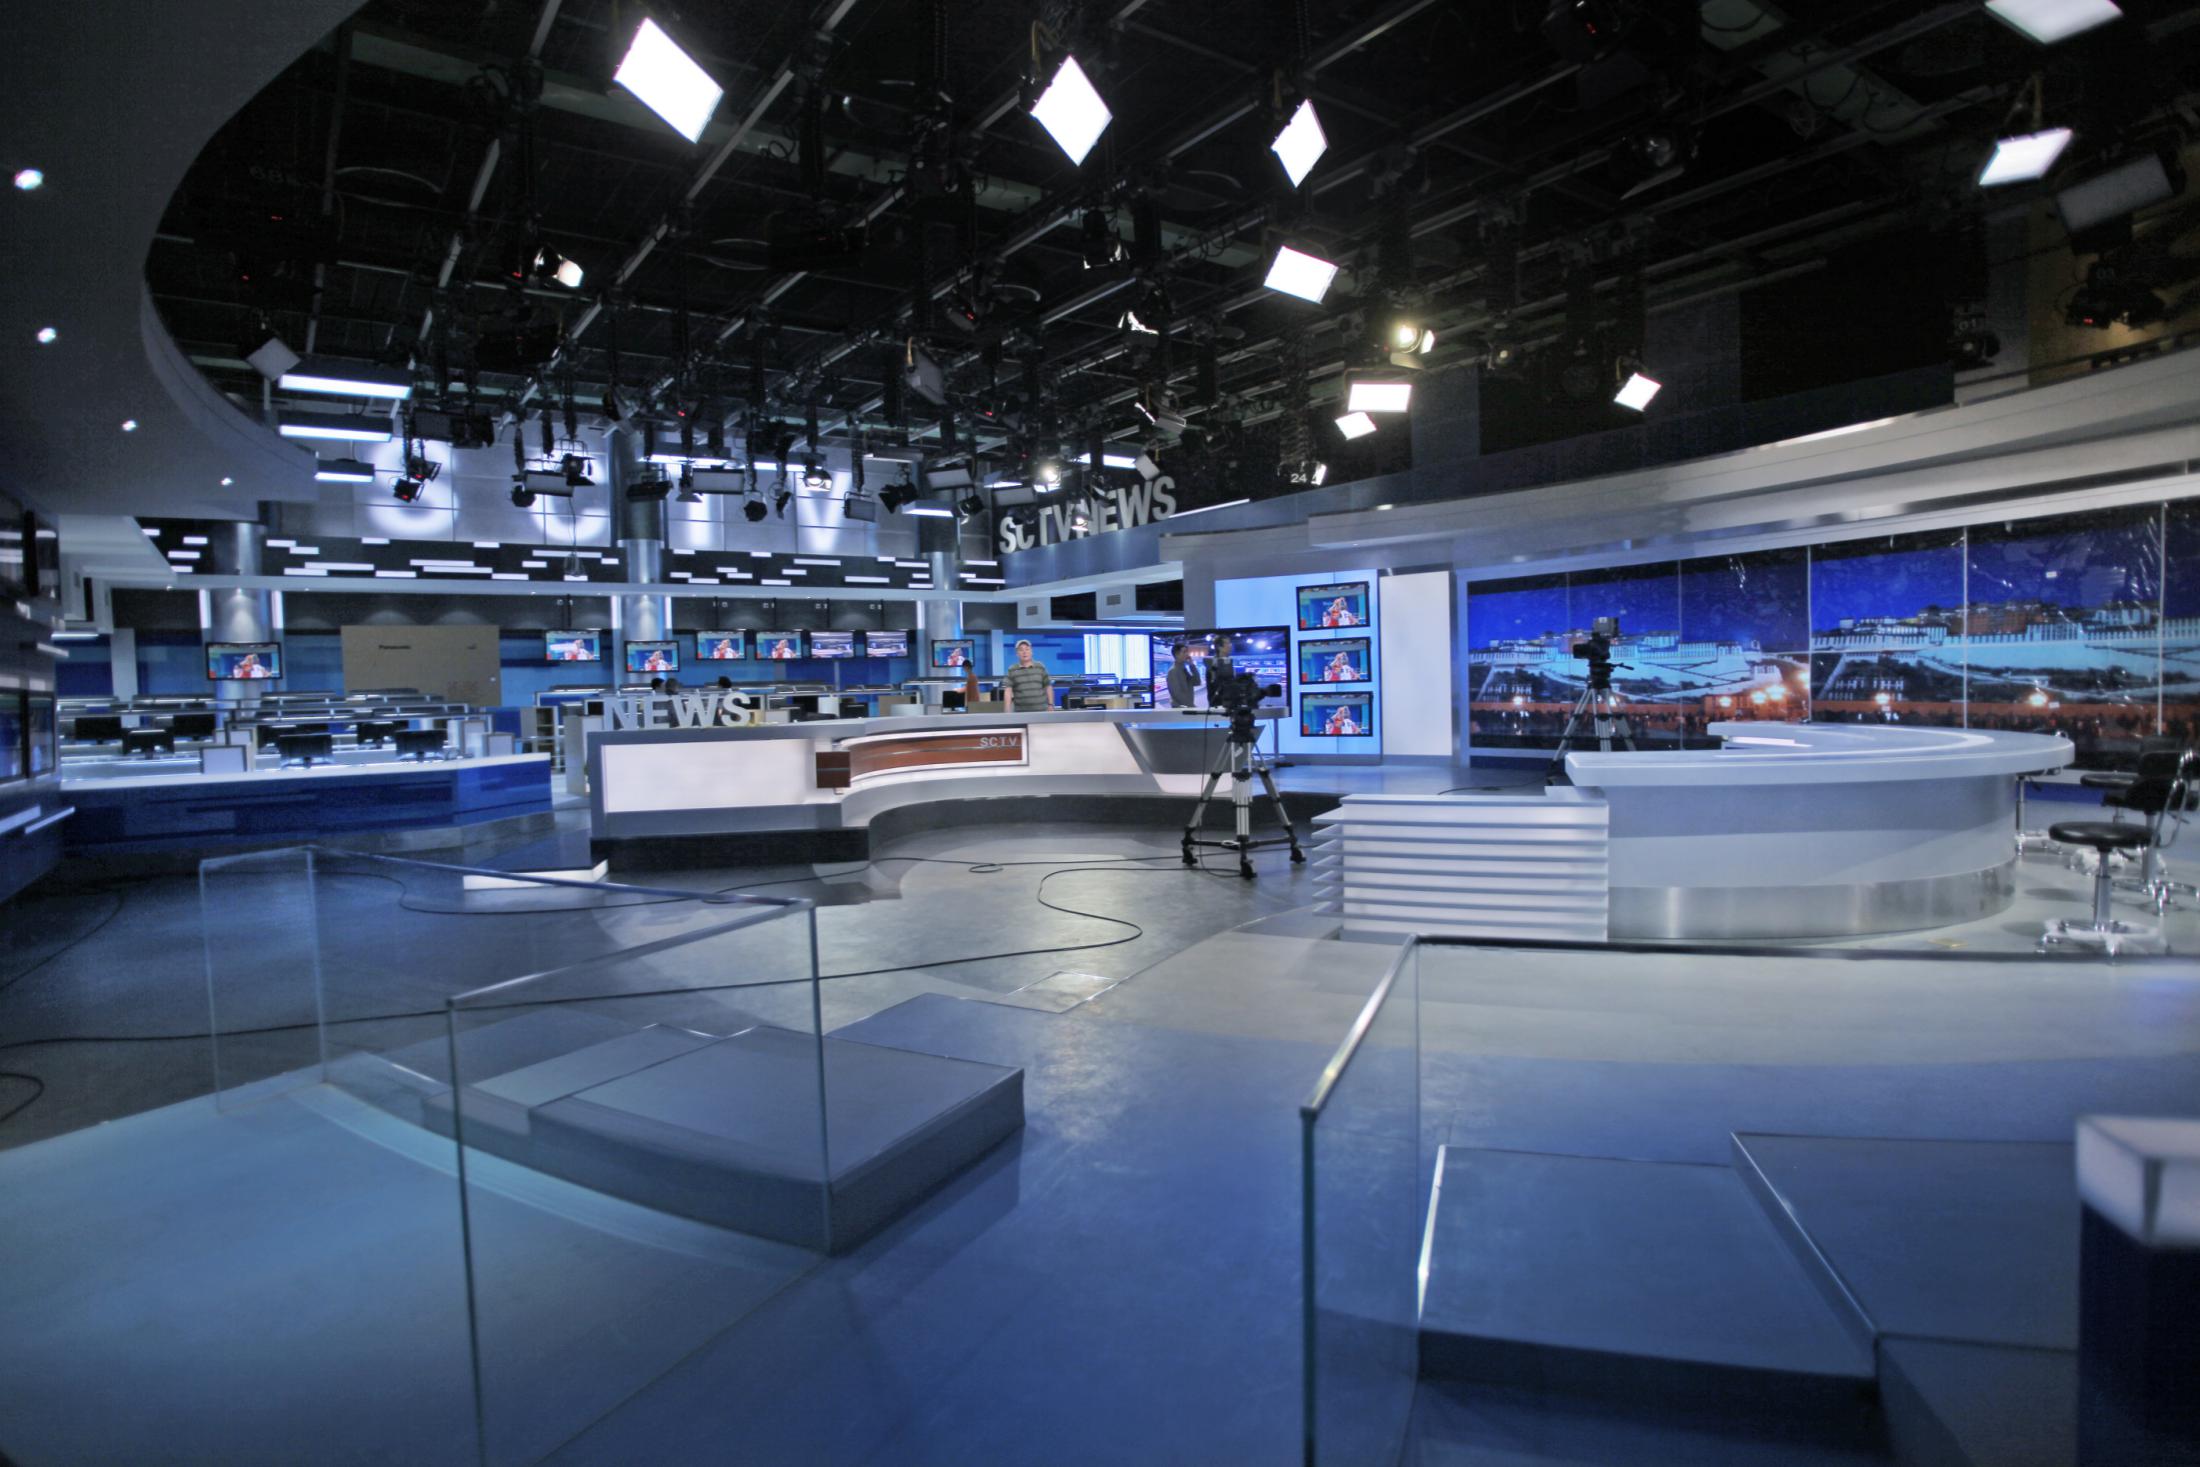 Sichuan TV News Center Studio